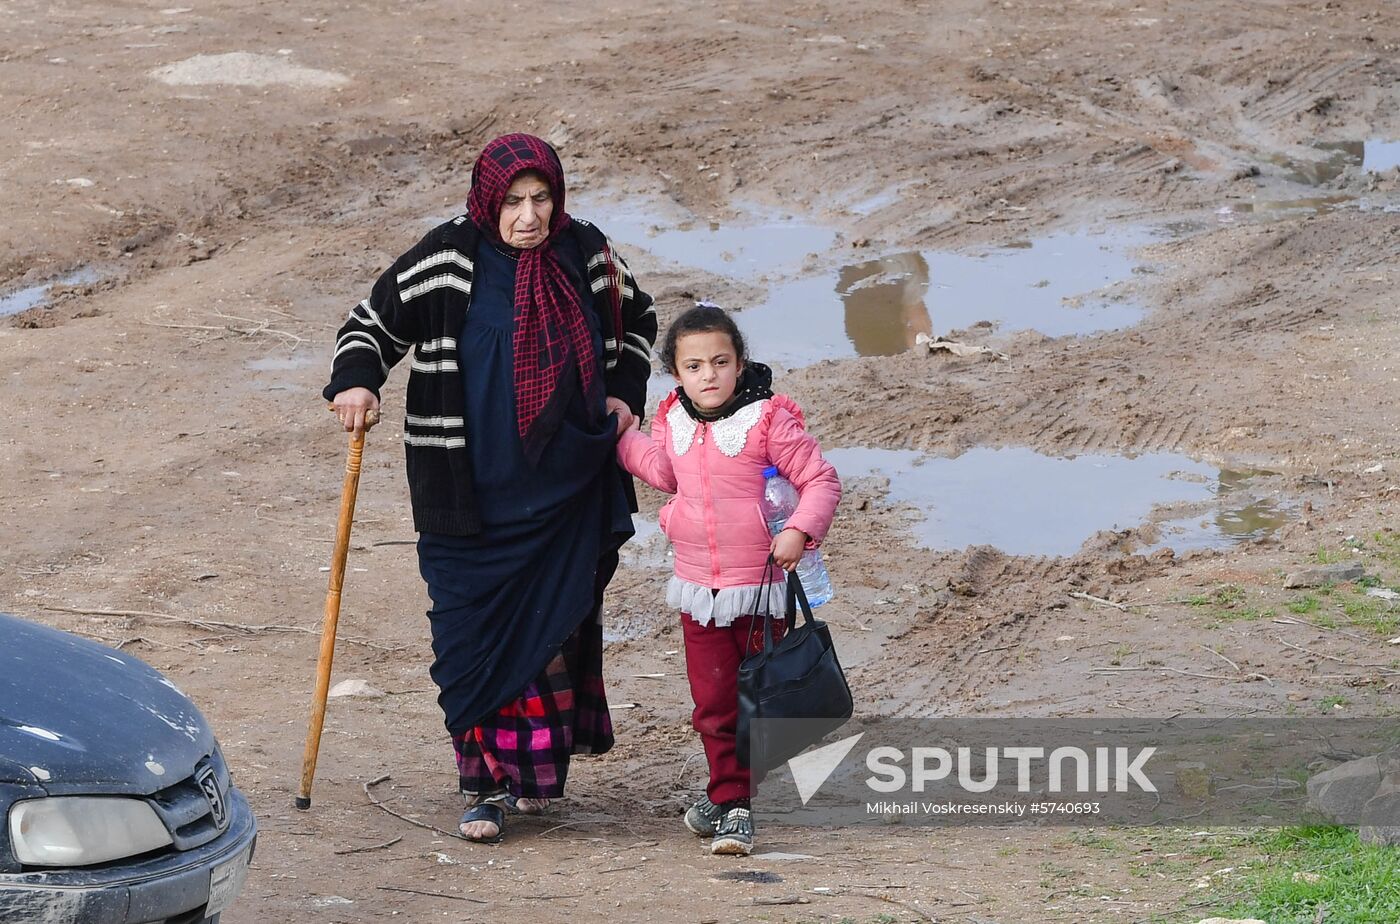 Syria Refugees